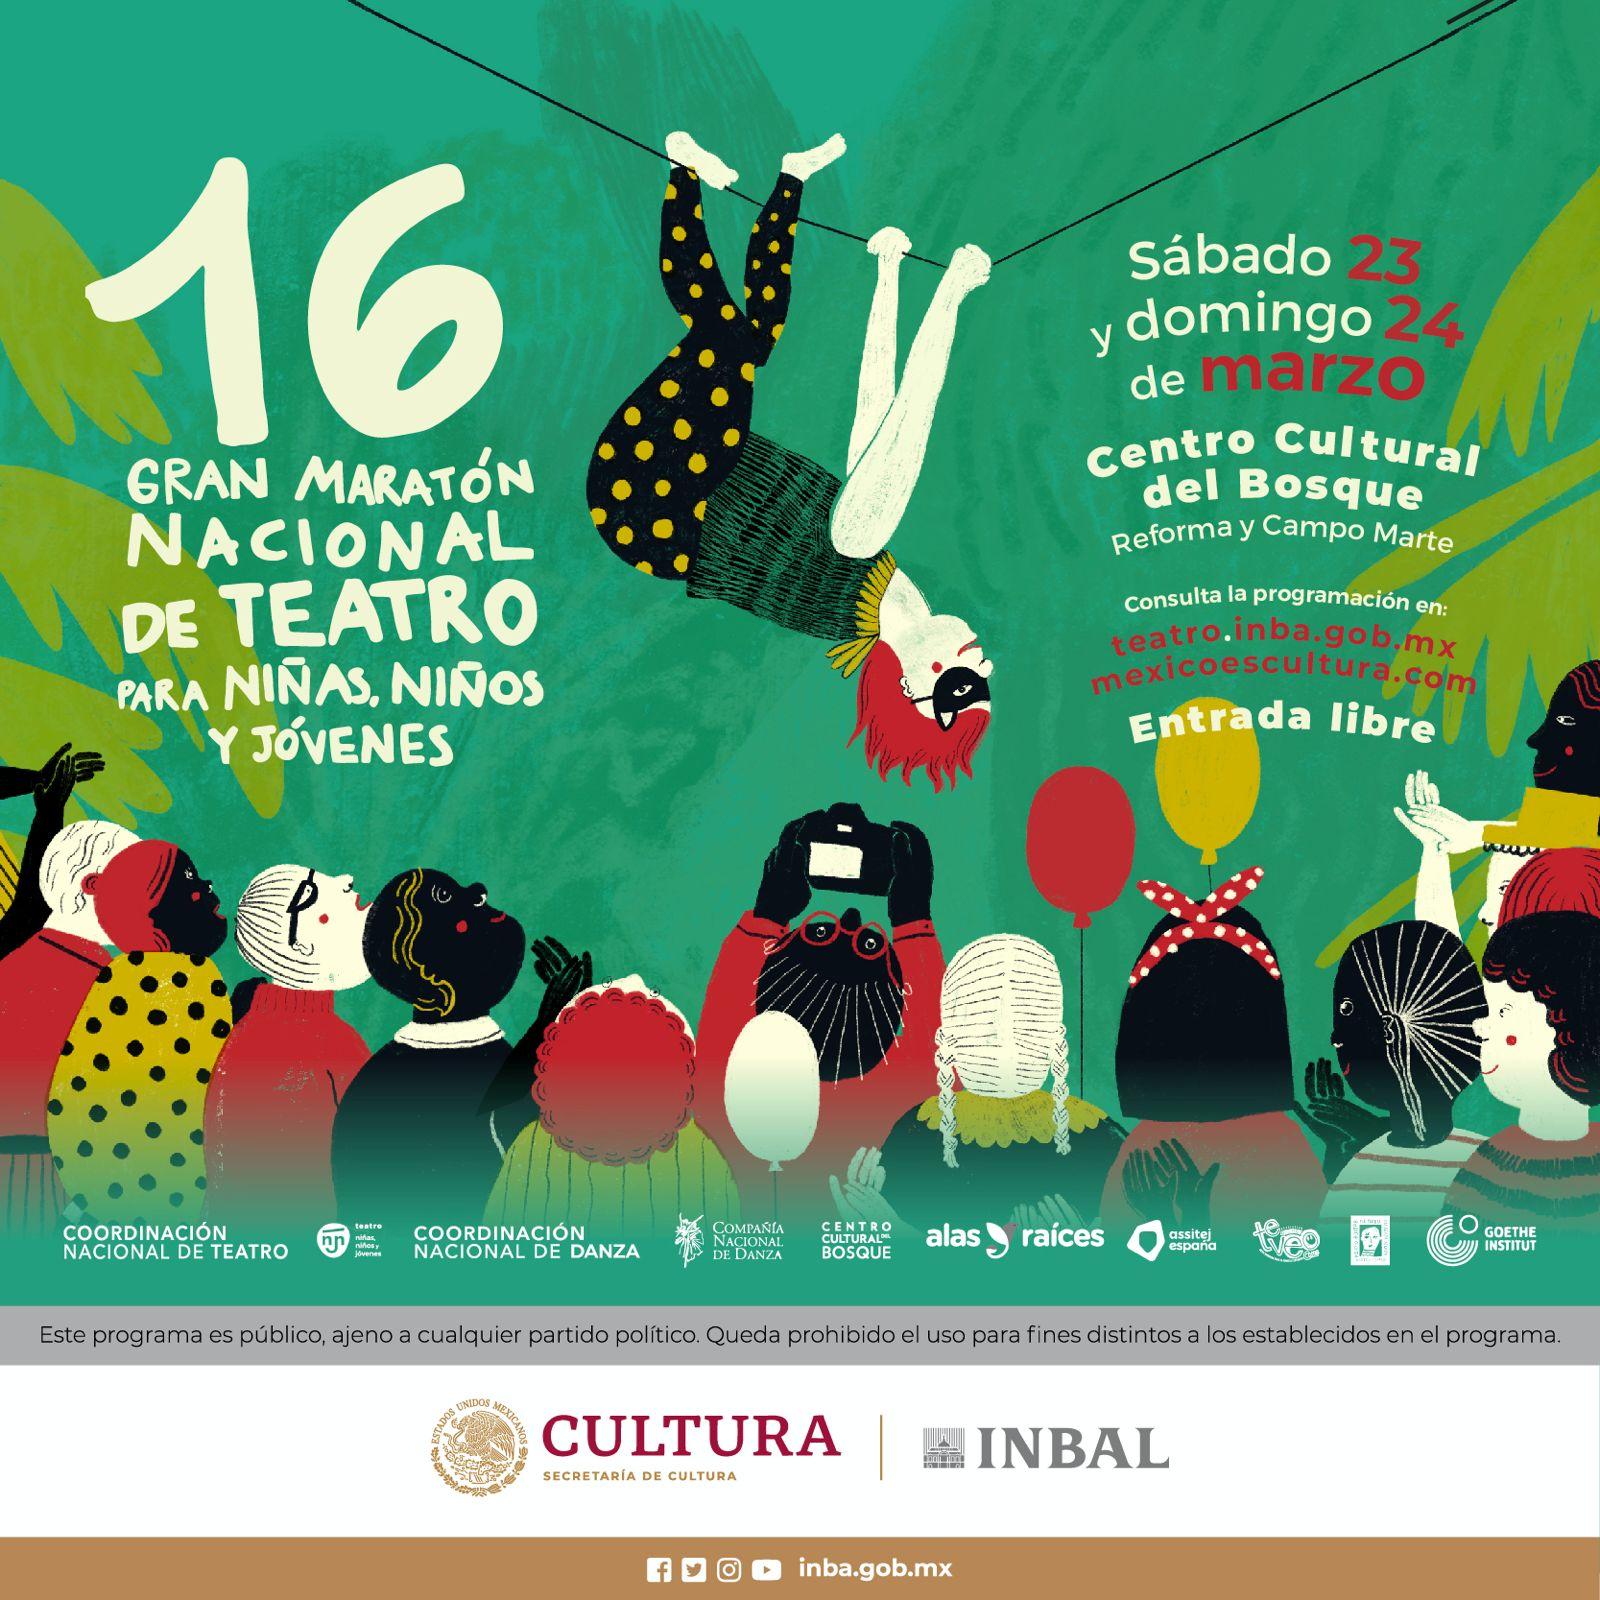 Мексика празднует 16° Большой театральный марафон для детей, подростков и юношей